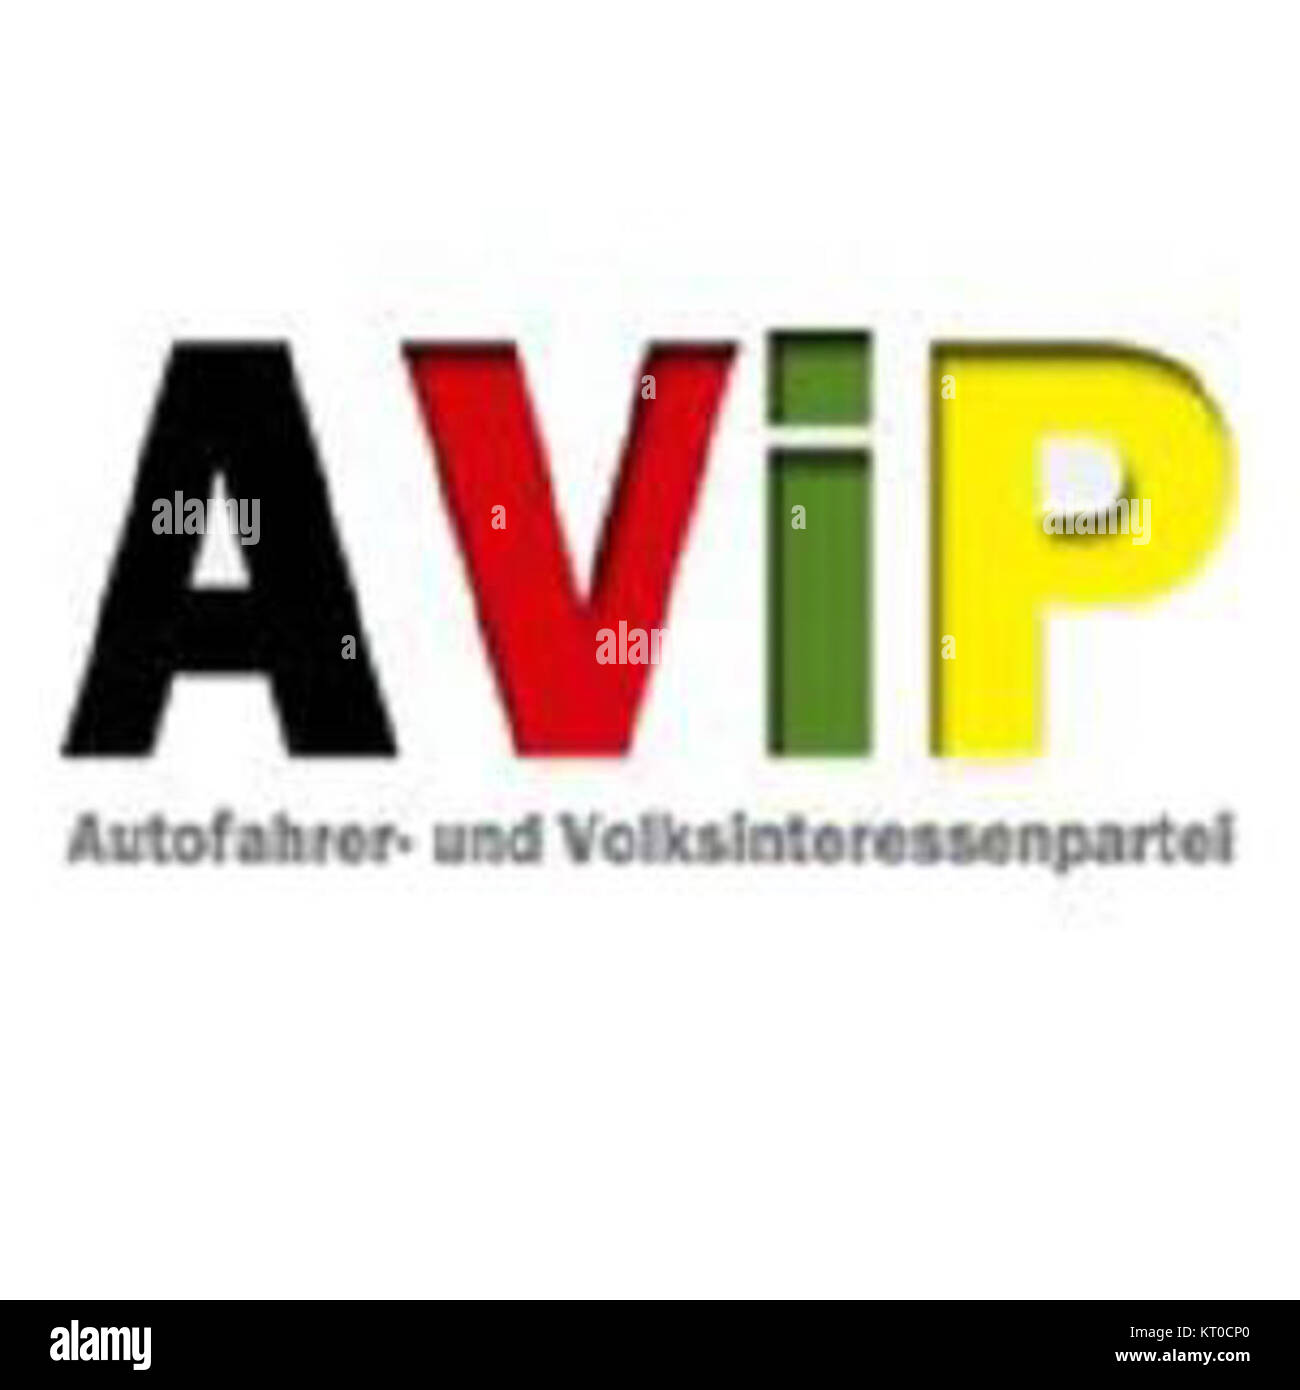 Autofahrer- und Volksinteressenpartei Logo Stock Photo